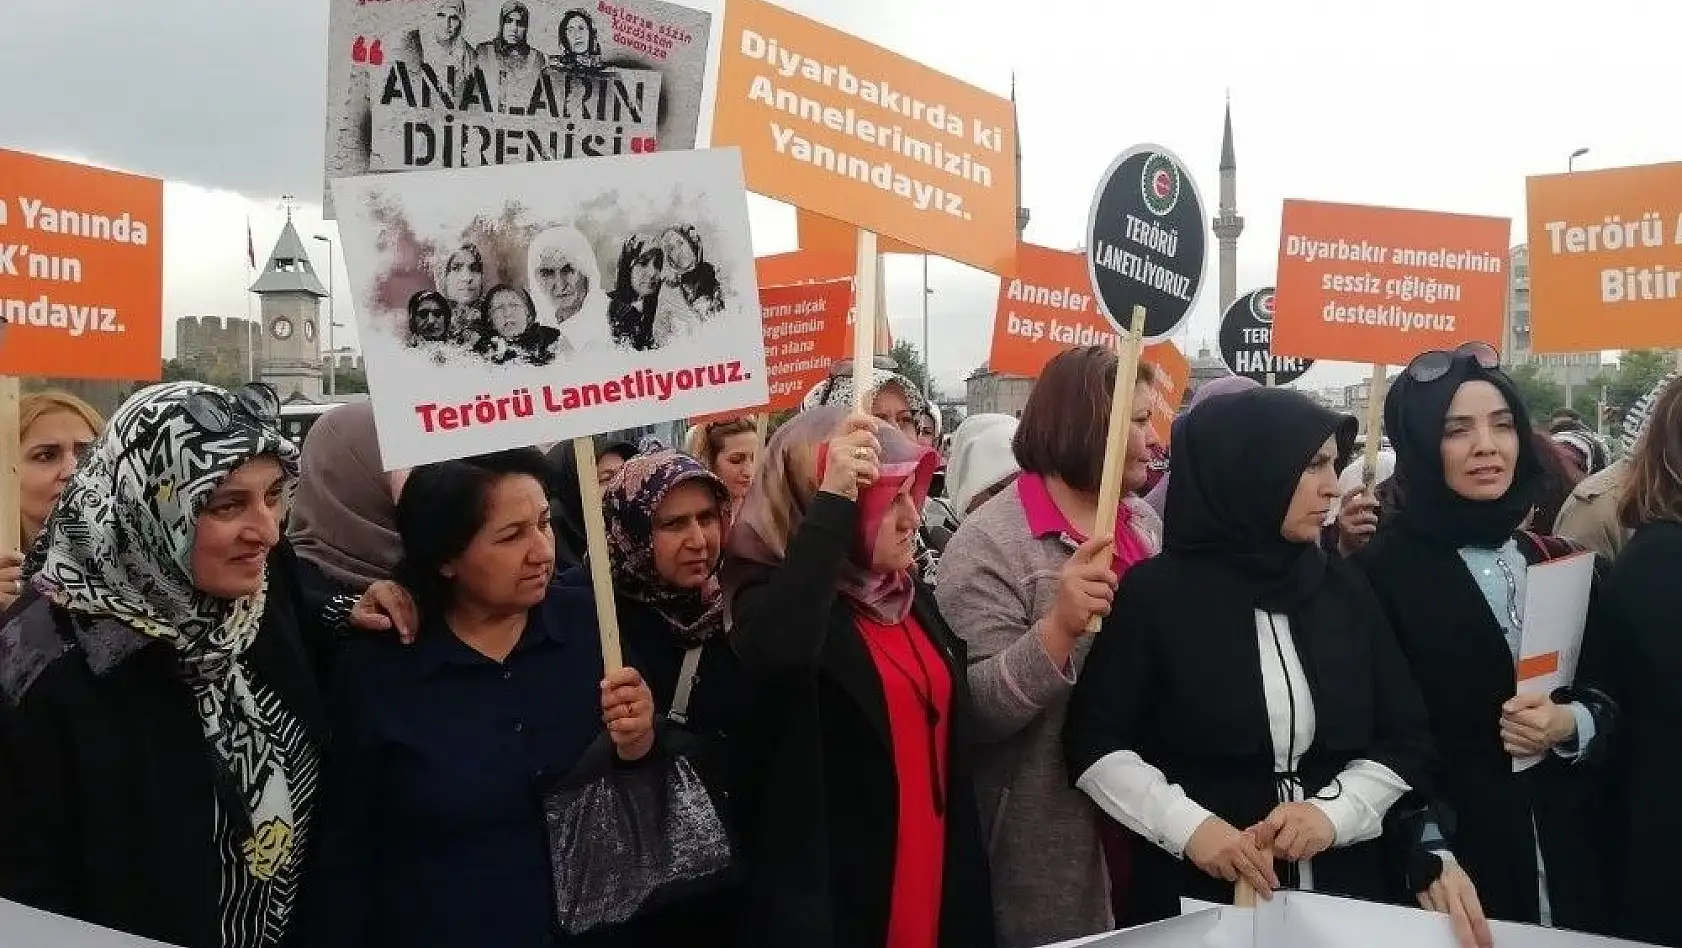 Şehit Polis Yasin İke'nin ablası Keziban İkeeser:'Tarih teröre meydan okuyan anneleri saygı ile yazacaktır'
